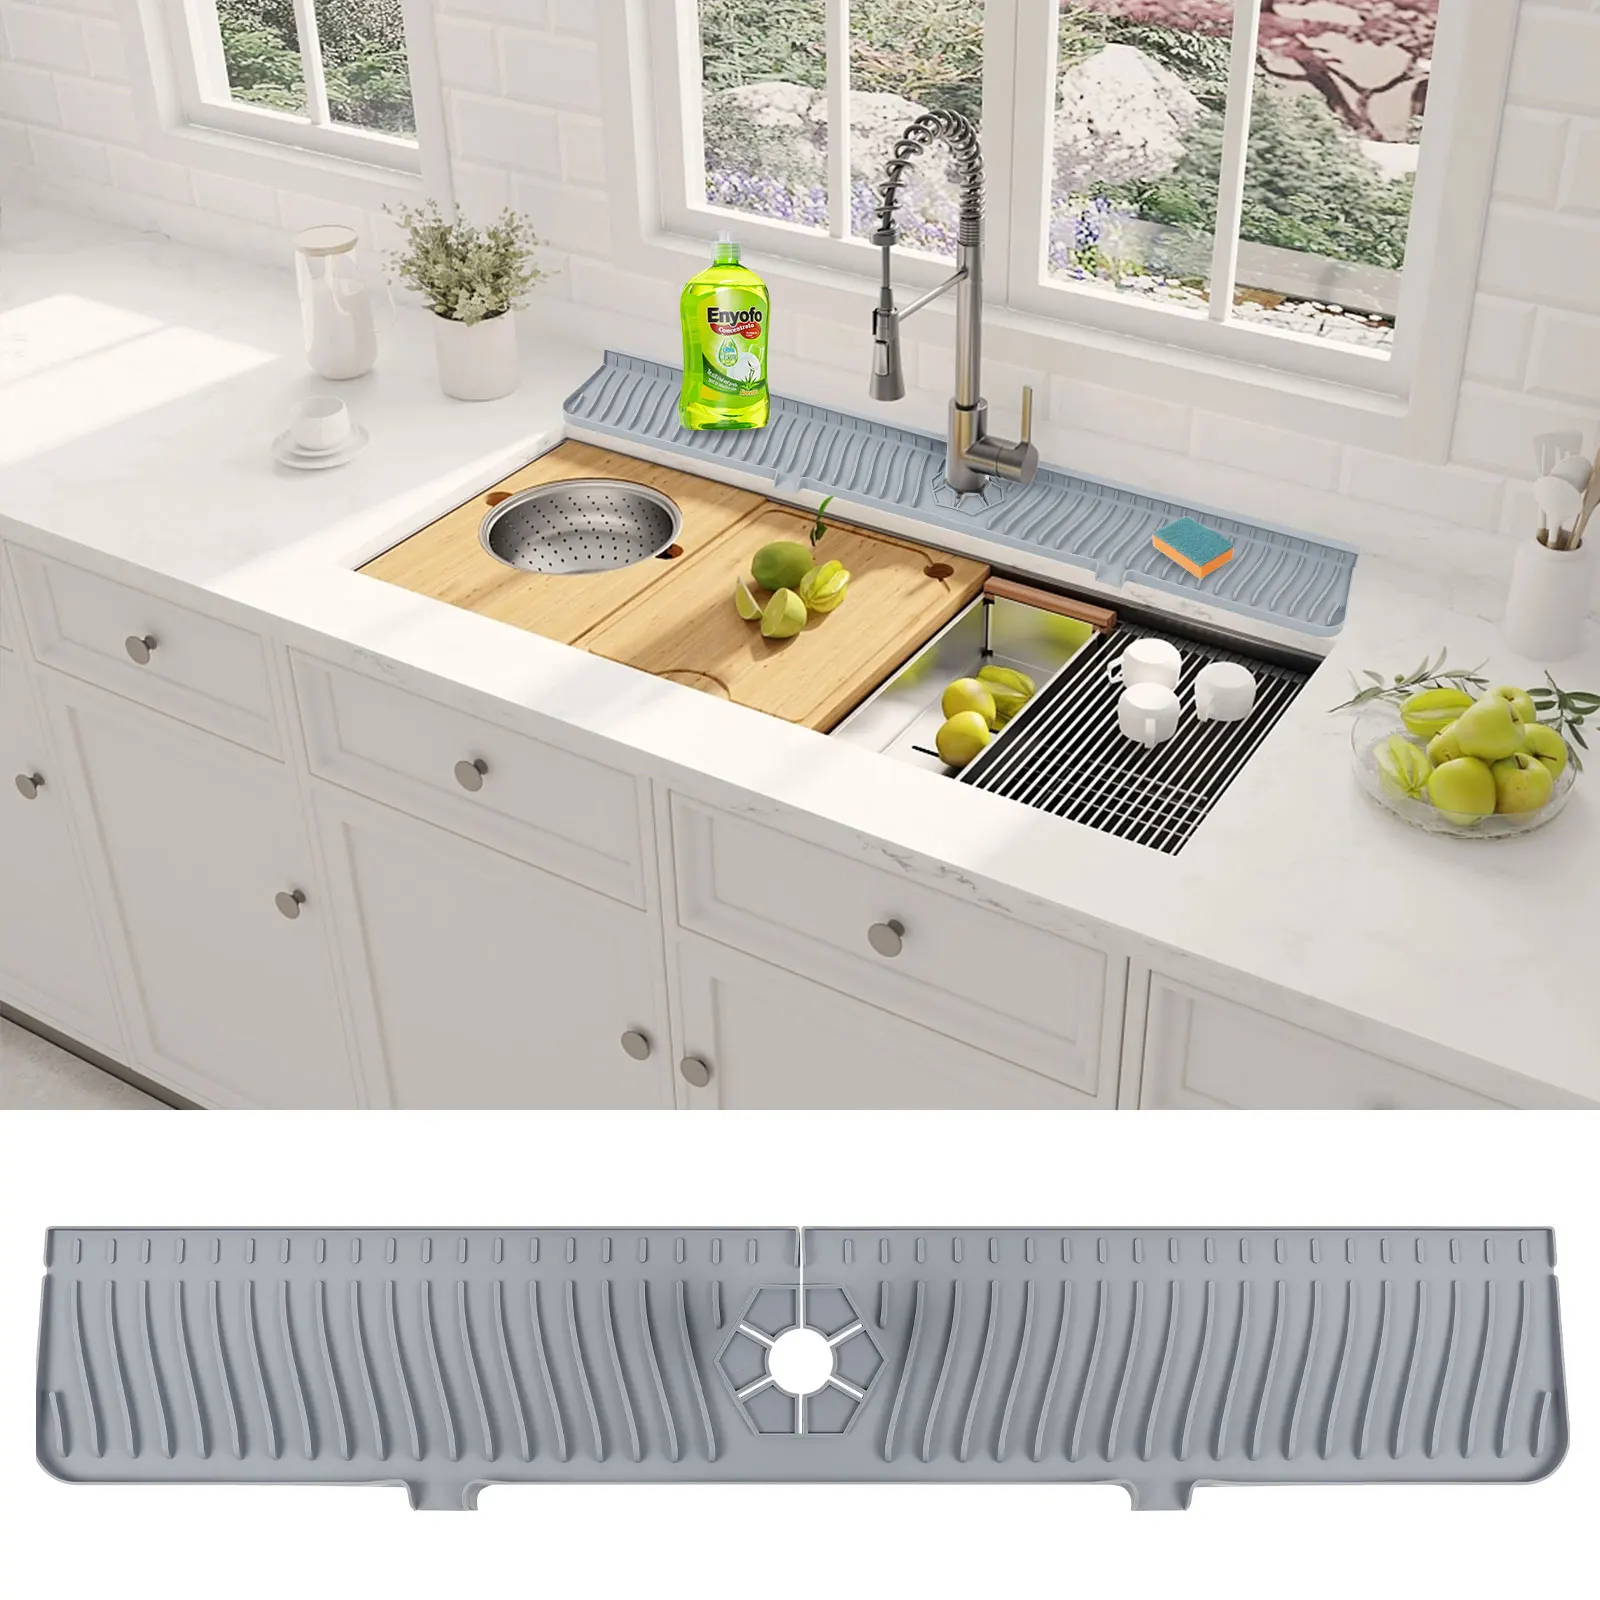 

Силиконовый смеситель для кухонной мойки, большой коврик «Ловец» для ванны, 30 дюймов, с защитой от брызг